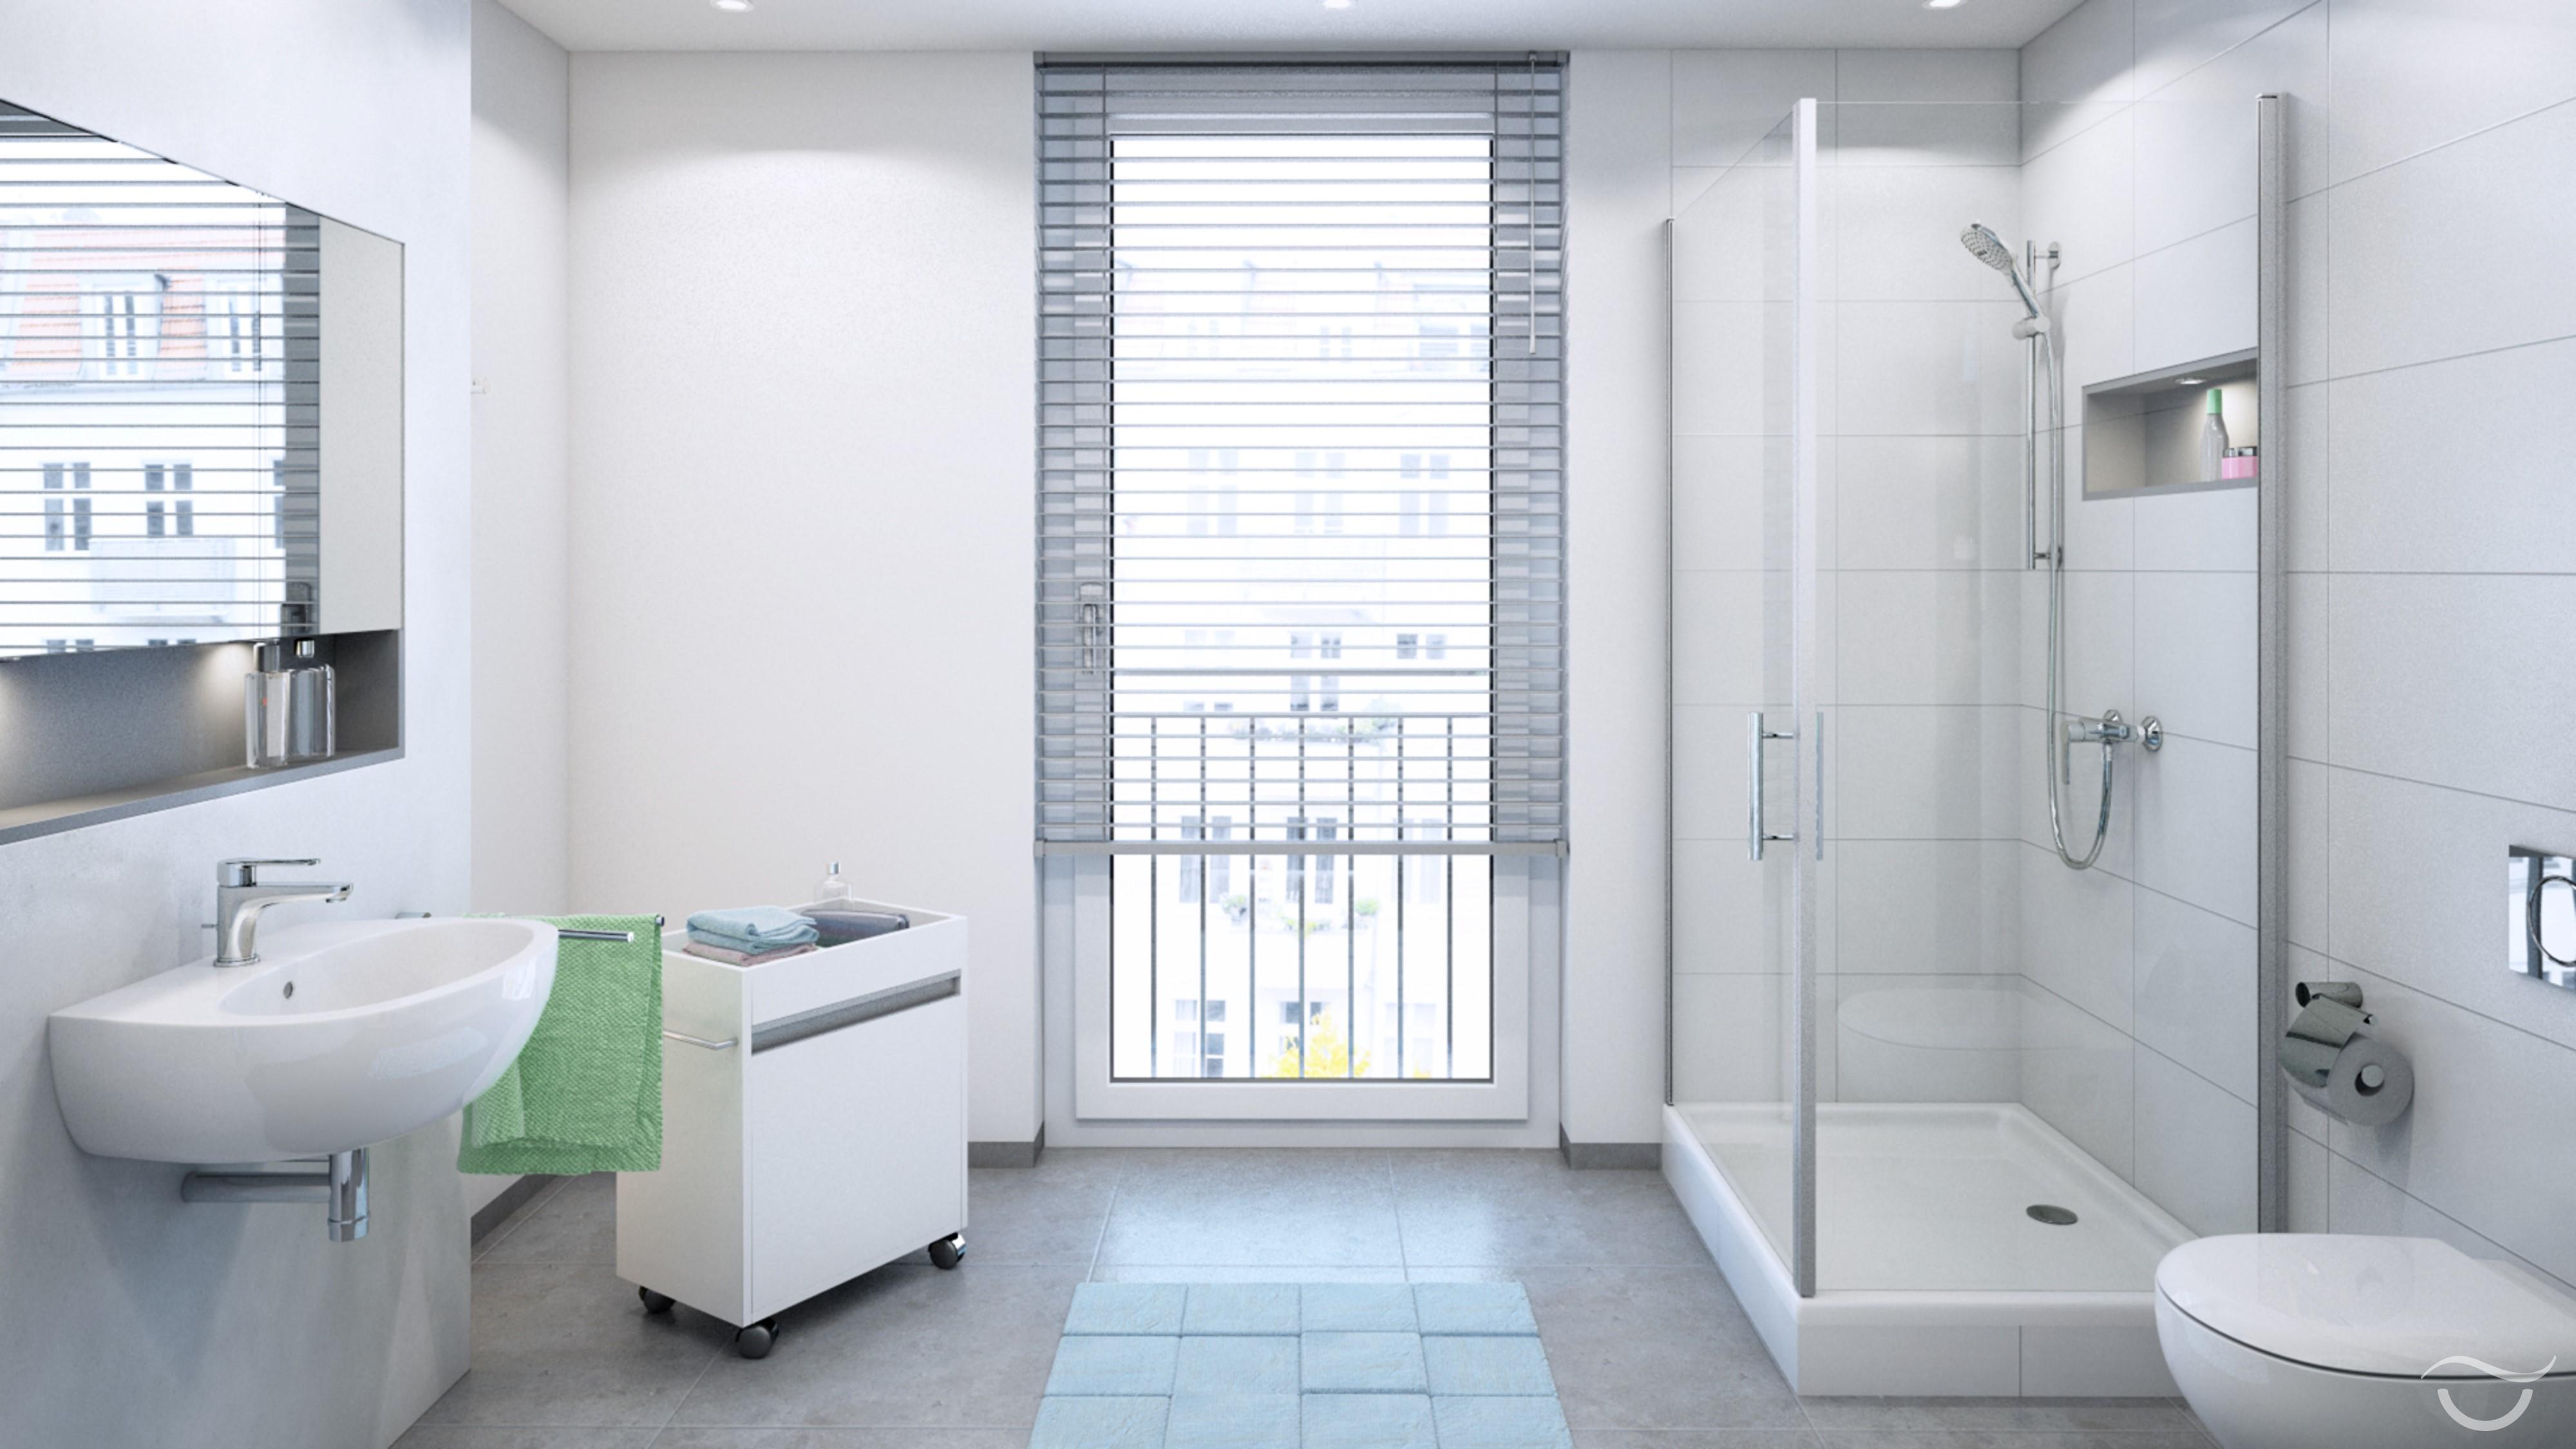 Klassisches und modernes Badezimmer-Design #dusche #kommode #wandspiegel ©Banovo GmbH